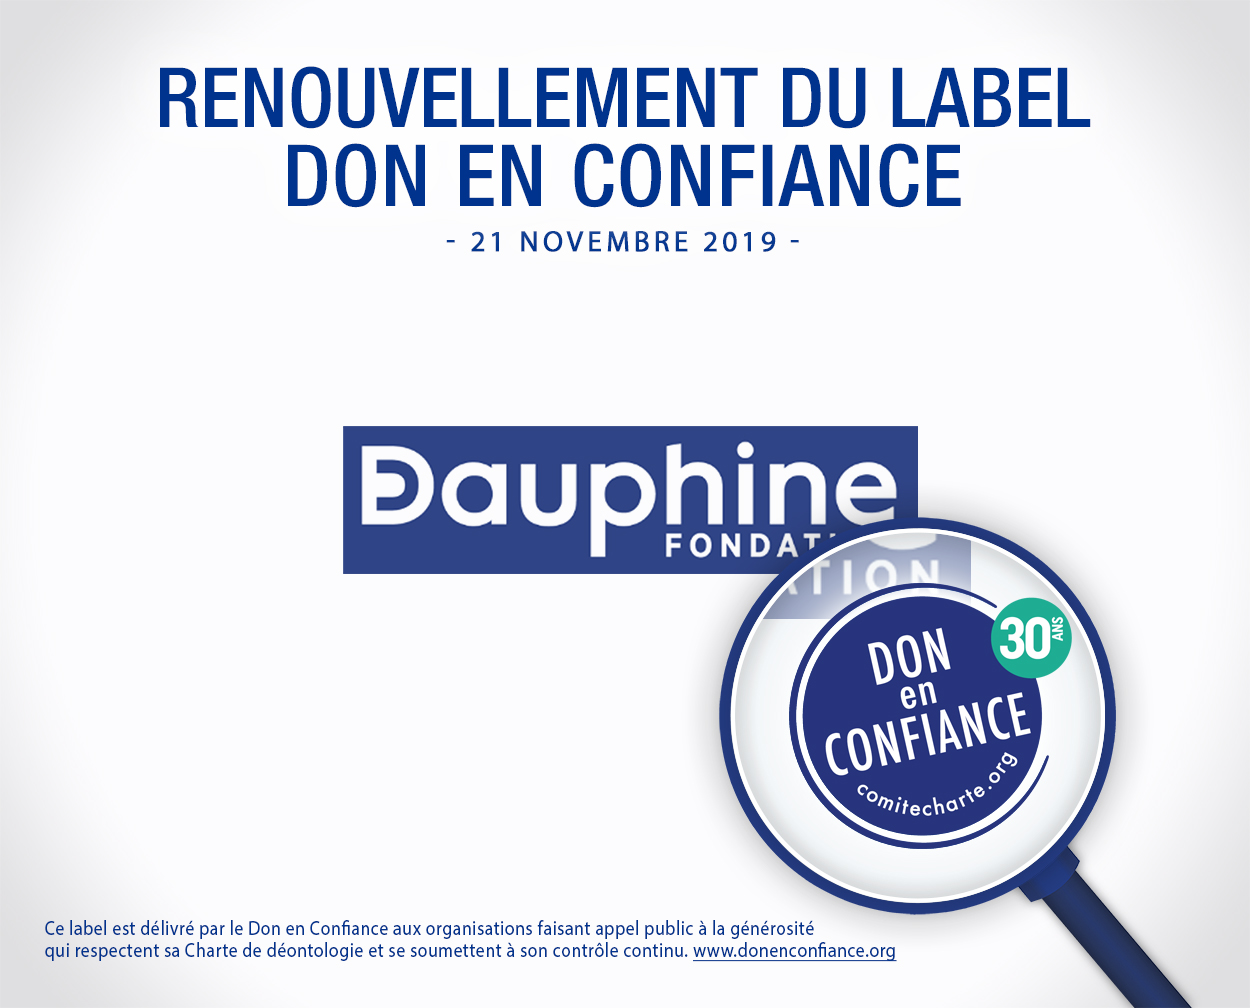 renouvellement_label_FondationDauphine_20191121